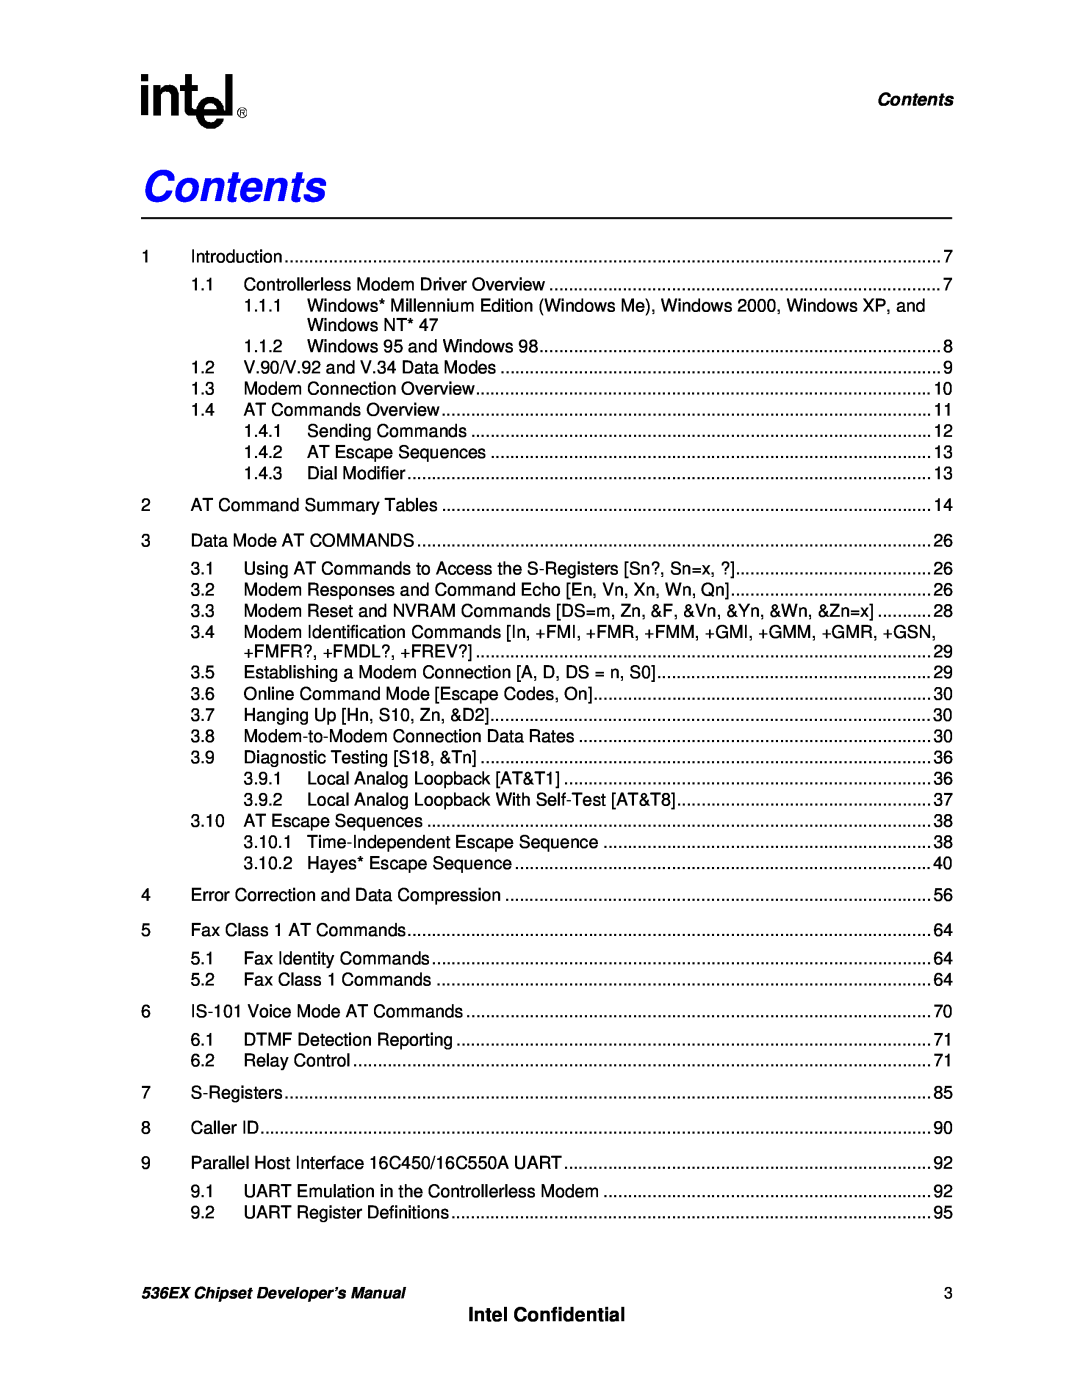 Intel 536EX manual Contents, Intel Confidential 